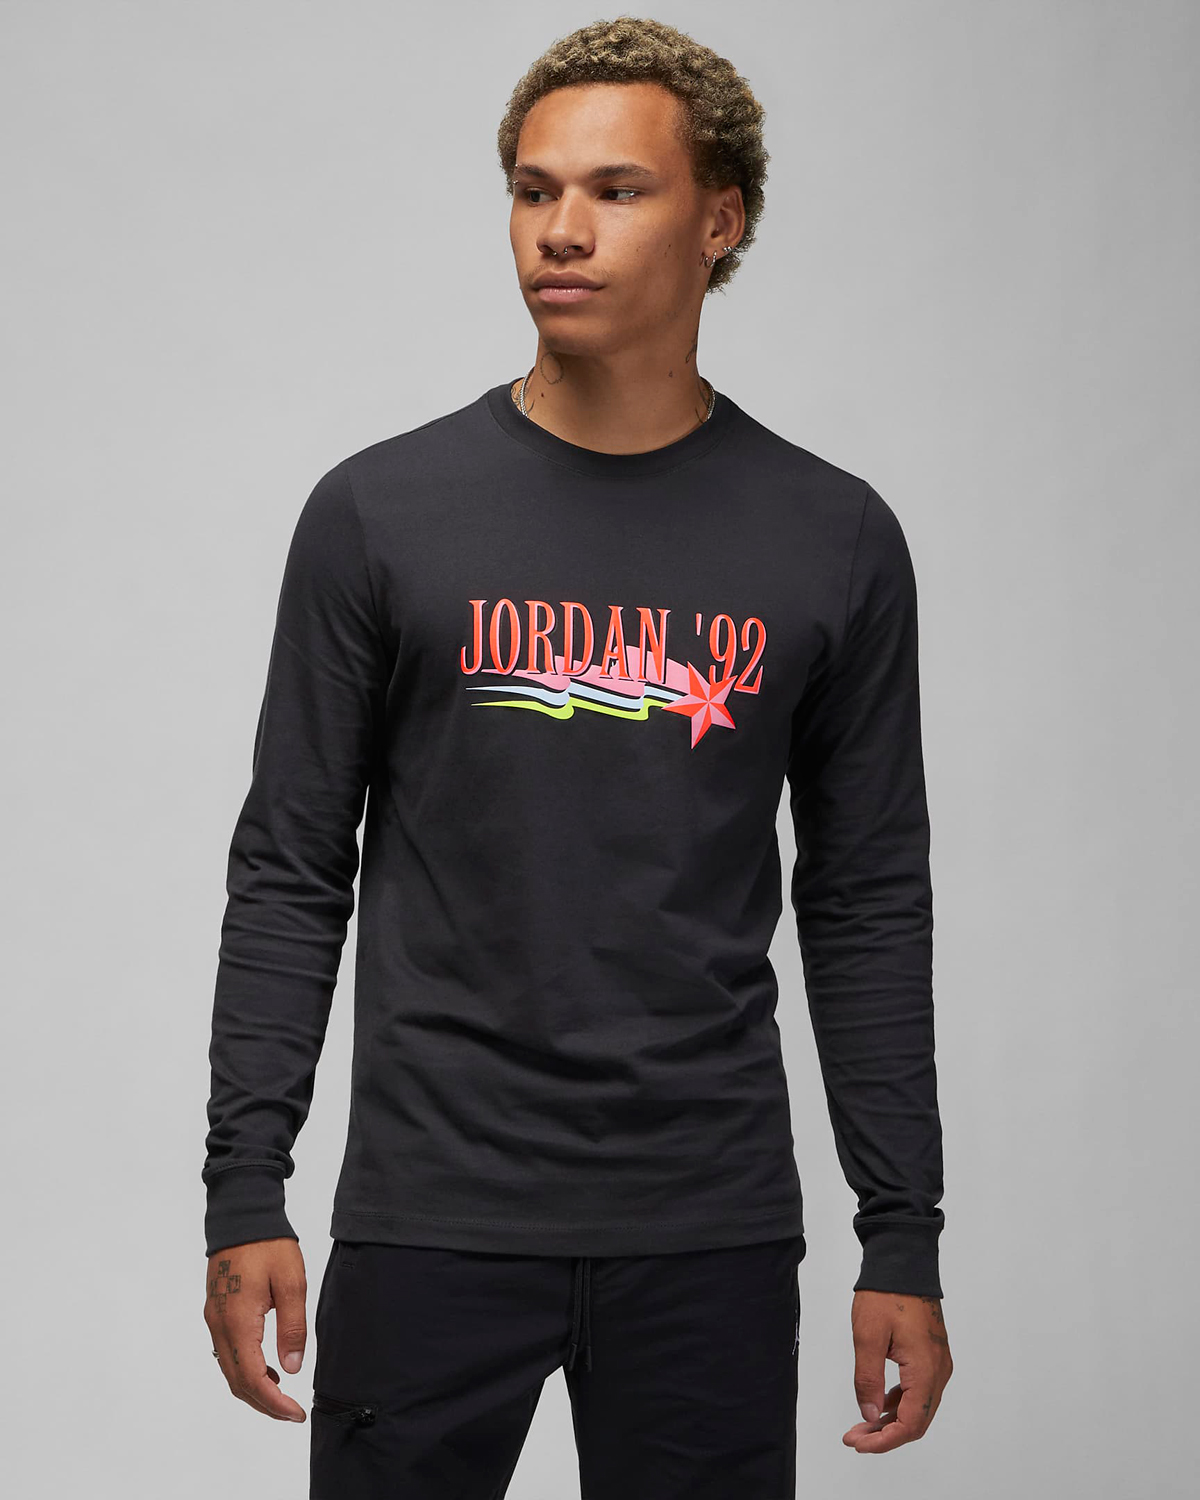 Jordan-92-Long-Sleeve-T-Shirt-Black-1